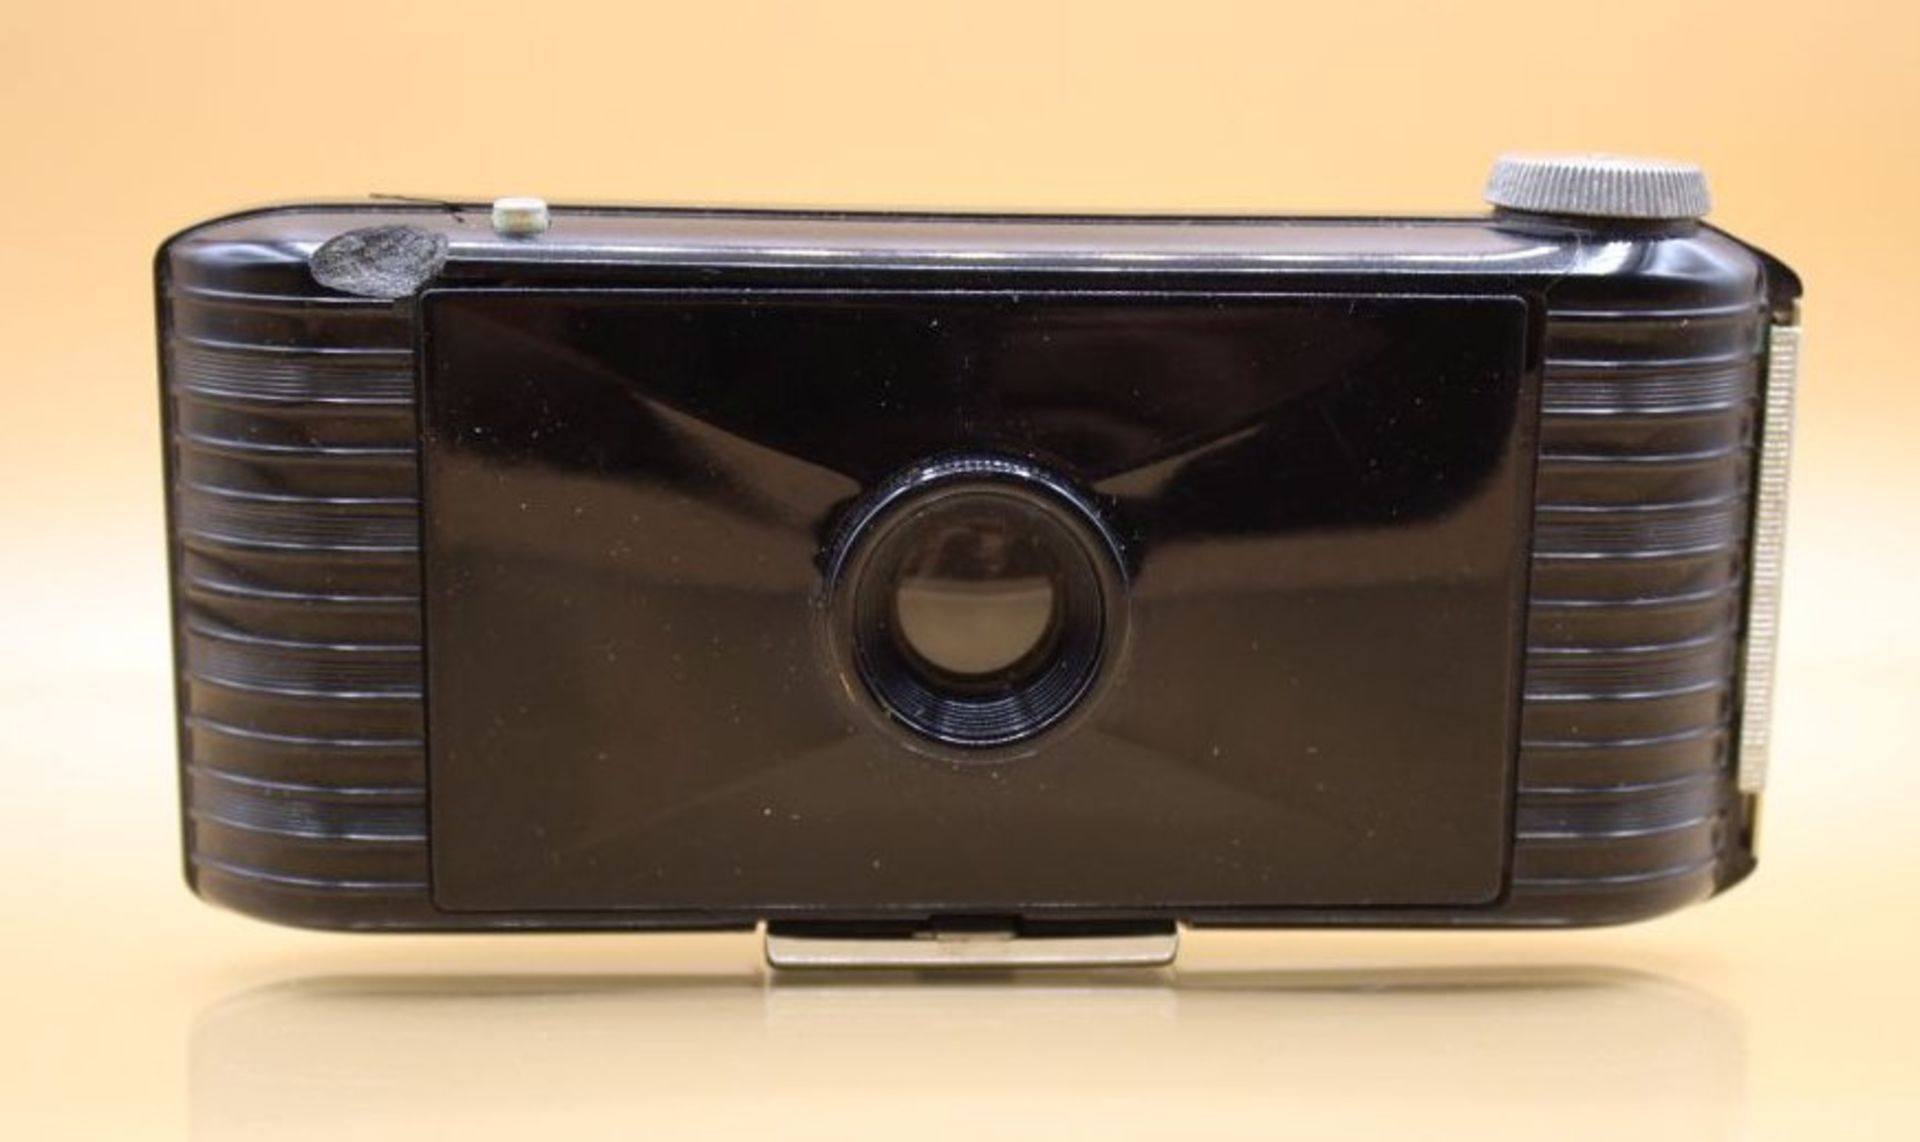 Balgenkamera, Jiffy Kodak, orig. Karton, Gehäuse beschädigt - Bild 3 aus 5